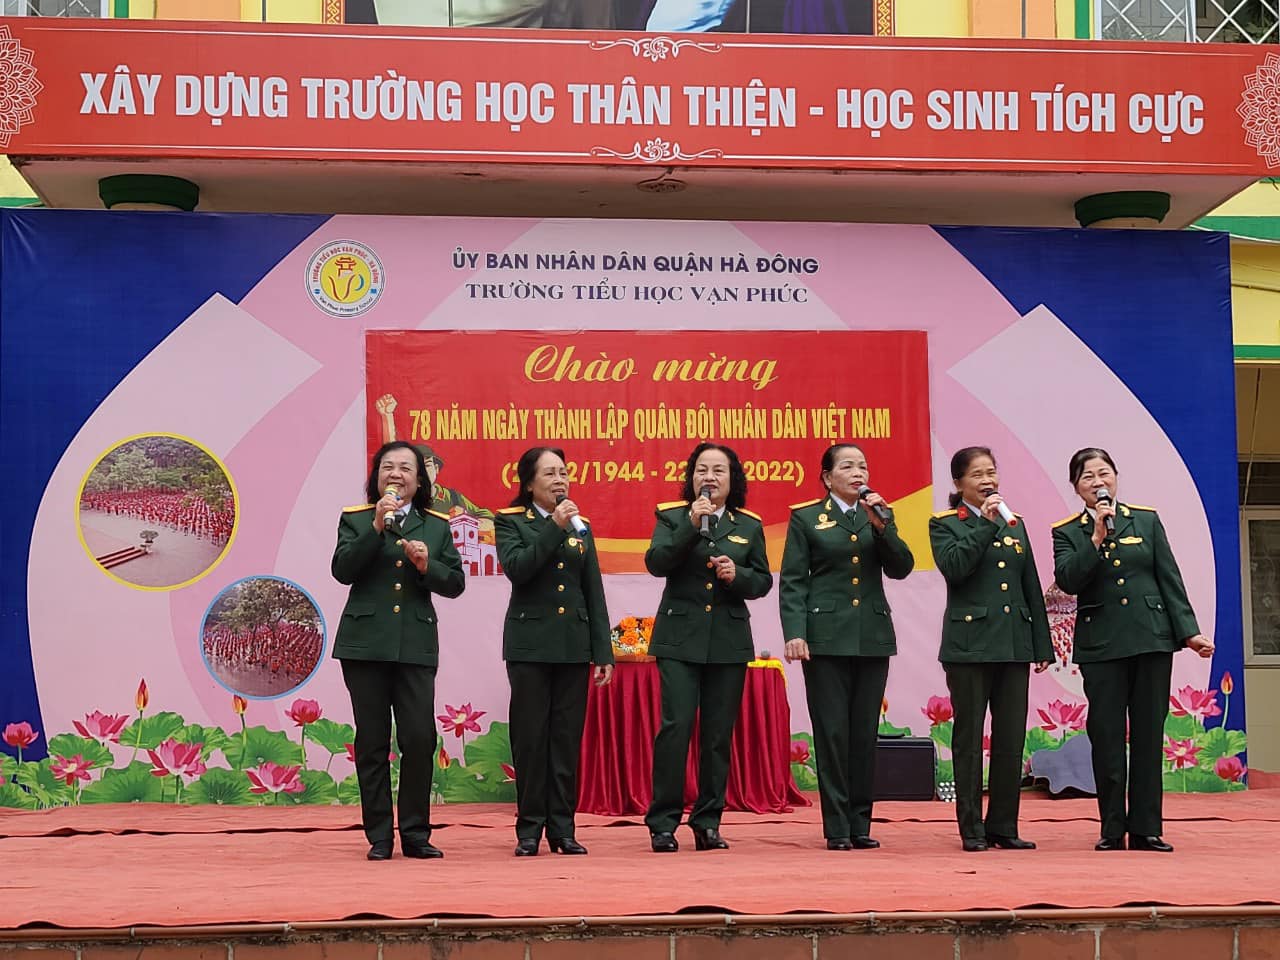 Chào mừng 78 năm ngày thành lập Quân đội Nhân dân Việt Nam